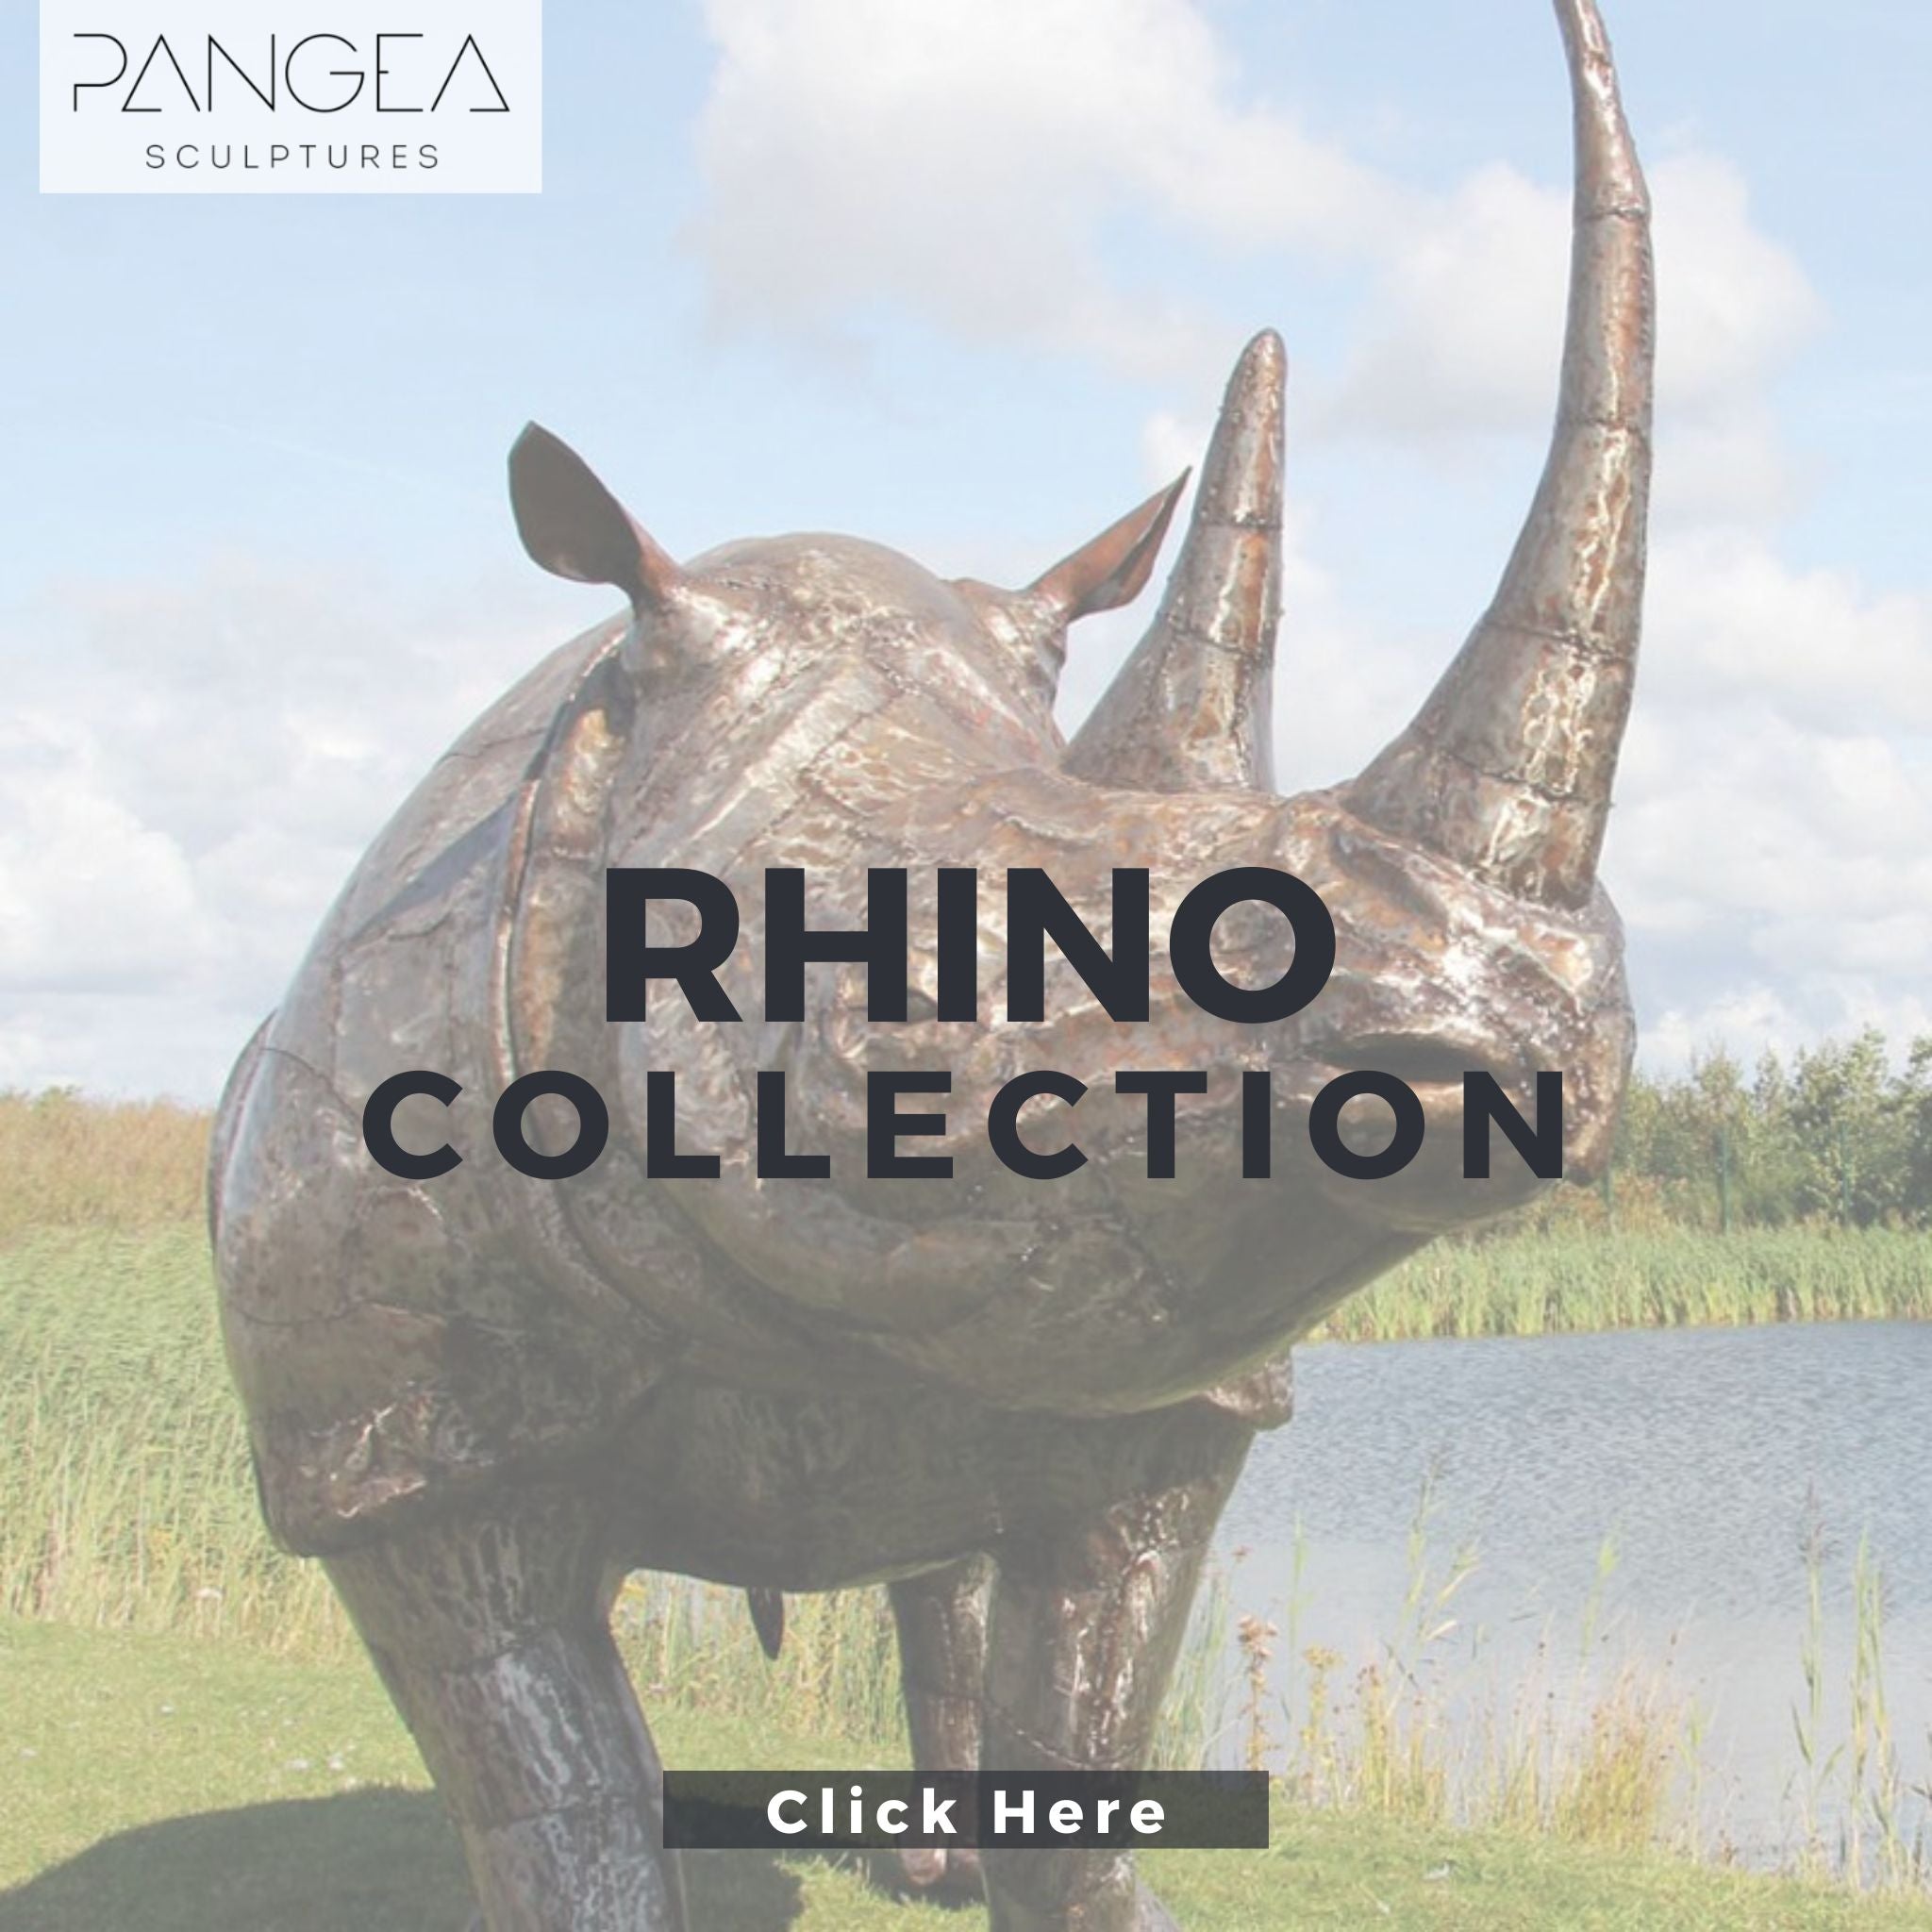 Rhino Sculptures - Pangea Sculptures